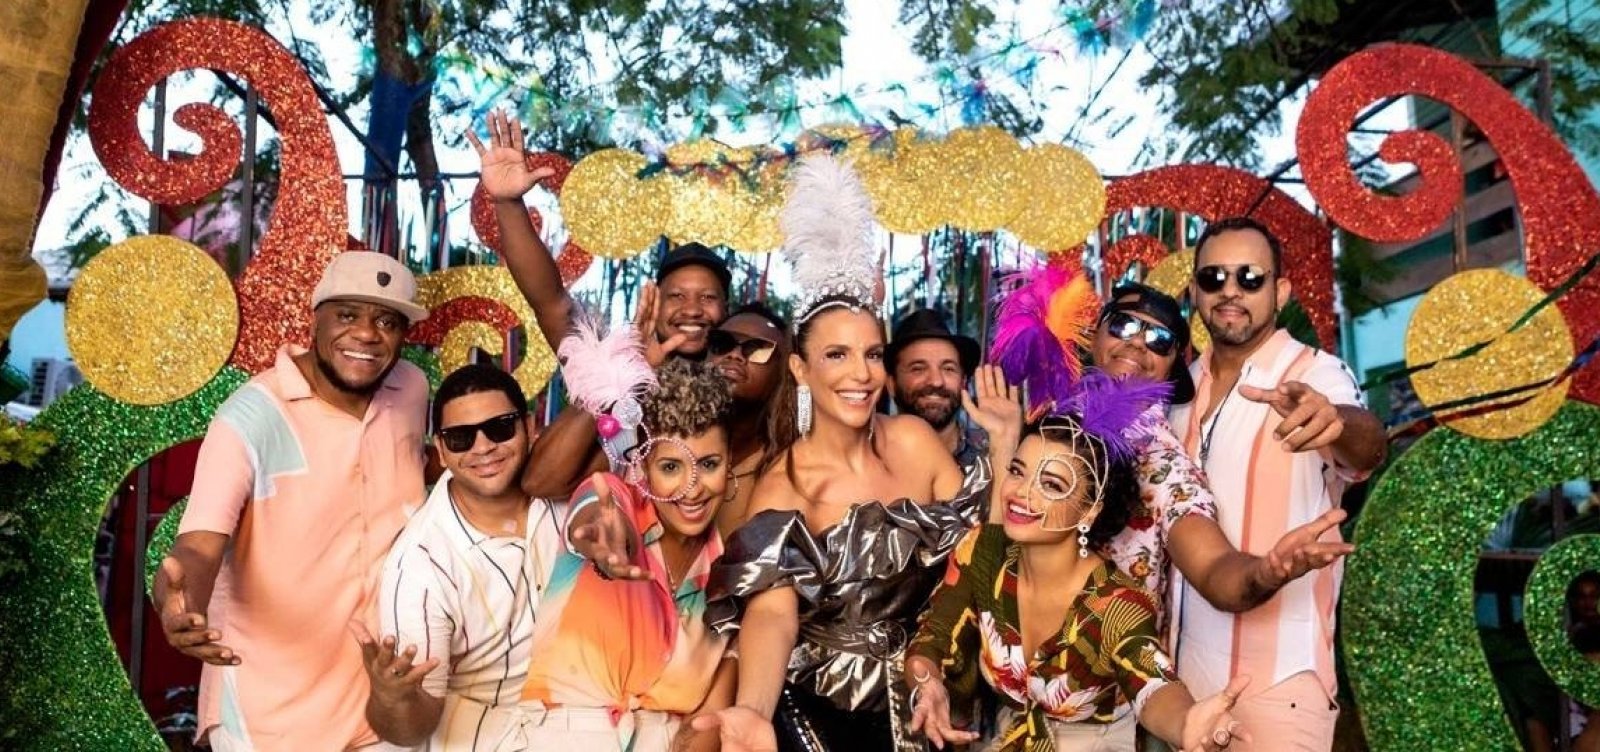 Ivete Sangalo lança clipe 'O Mundo Vai' para o Carnaval 2020